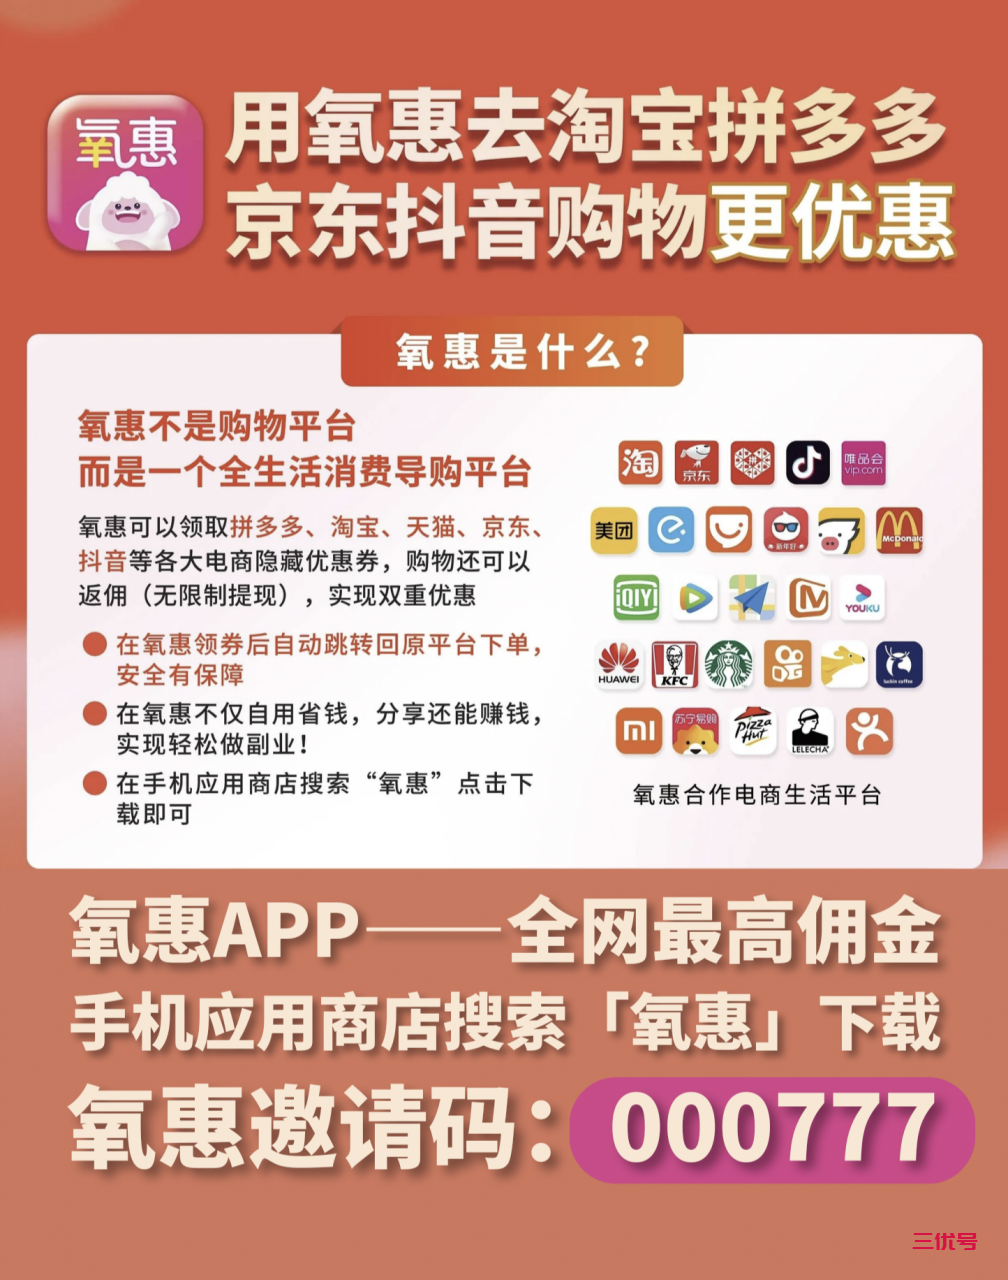 氧惠是什么平台 氧惠app官方邀请码是多少 精华干货 第2张